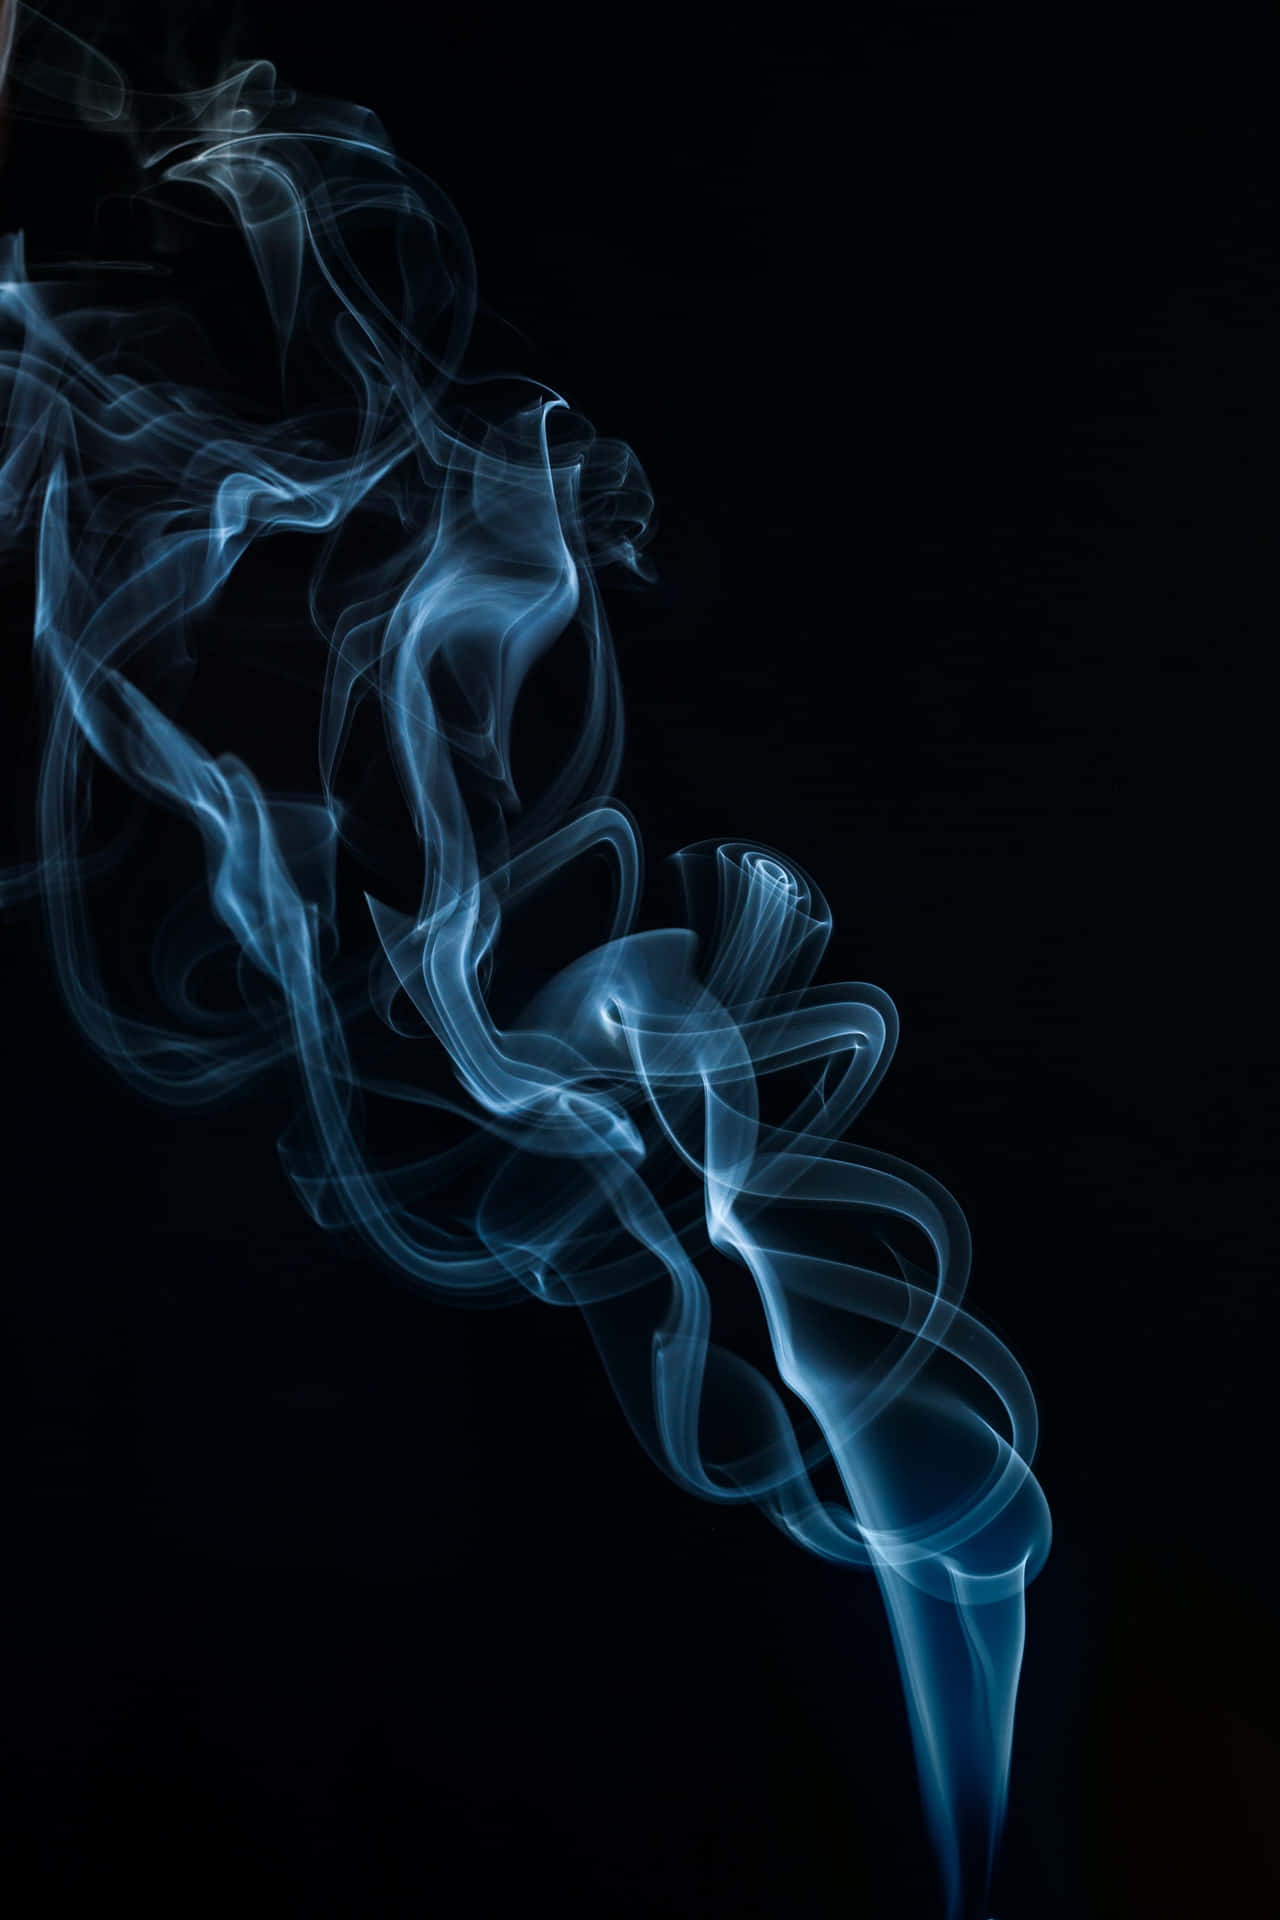 Ascores Ganham Vida Em Espirais De Fumaça. Papel de Parede